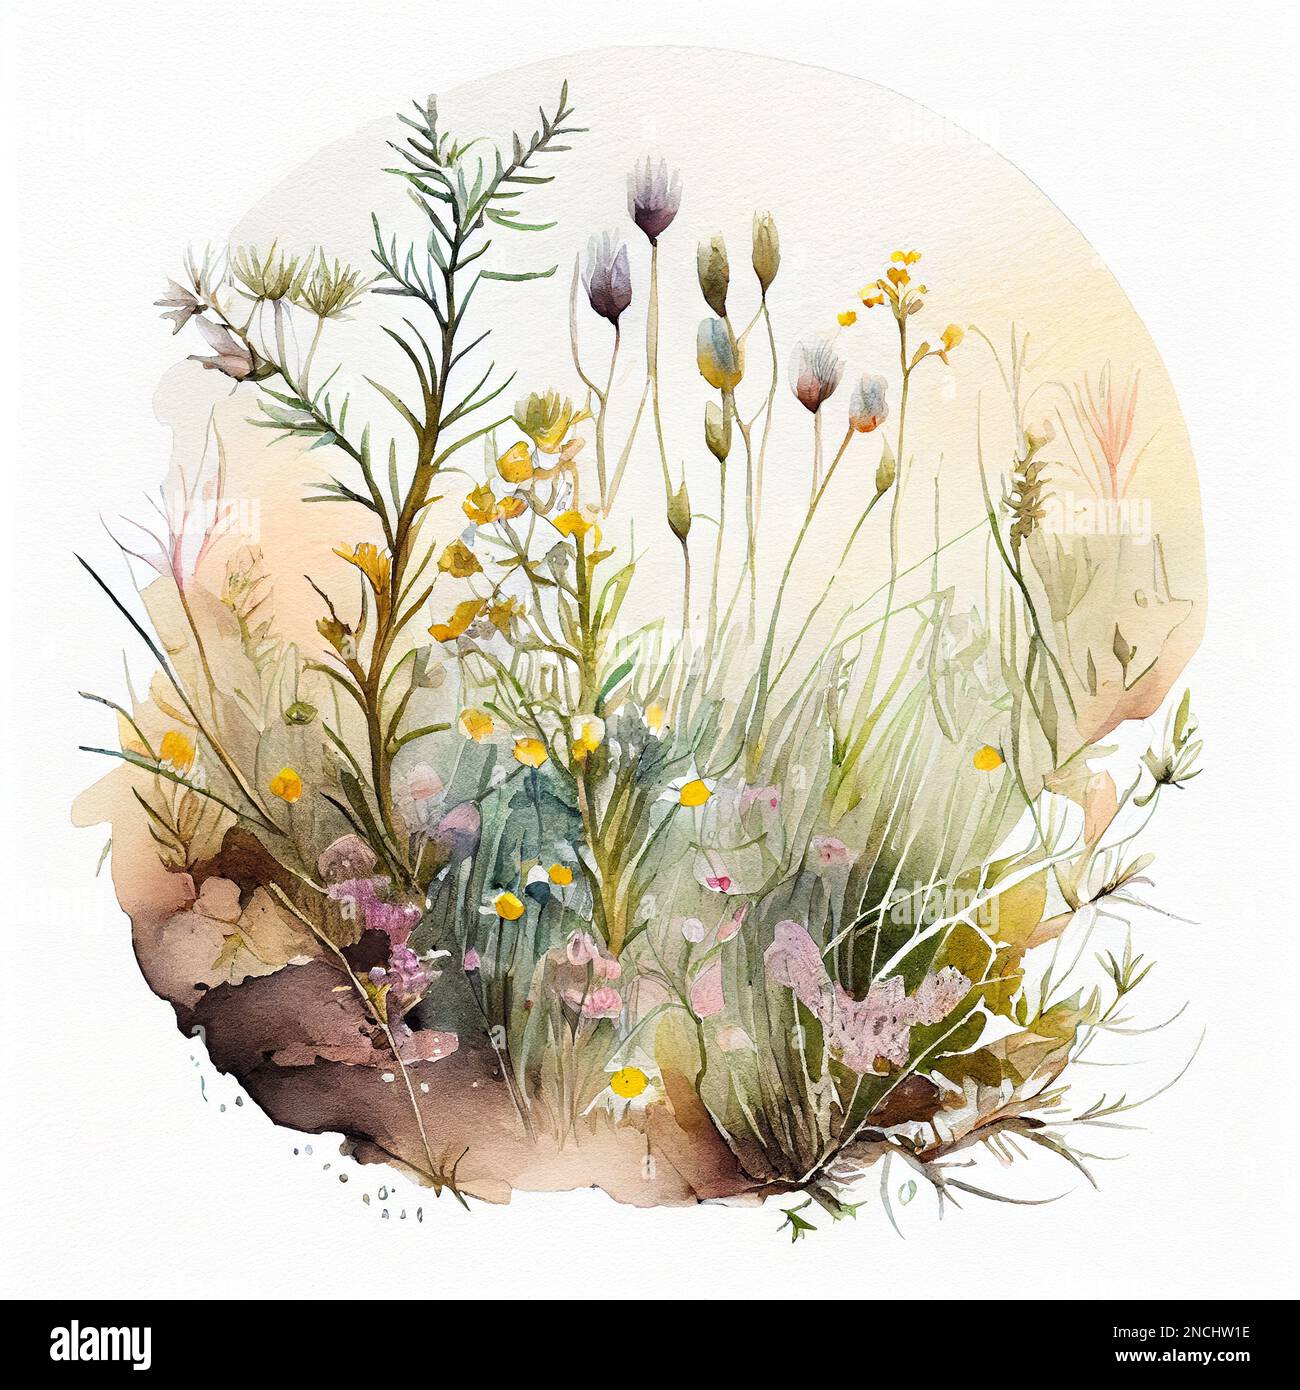 art aquarelle rond de la flore sauvage des prairies Banque D'Images